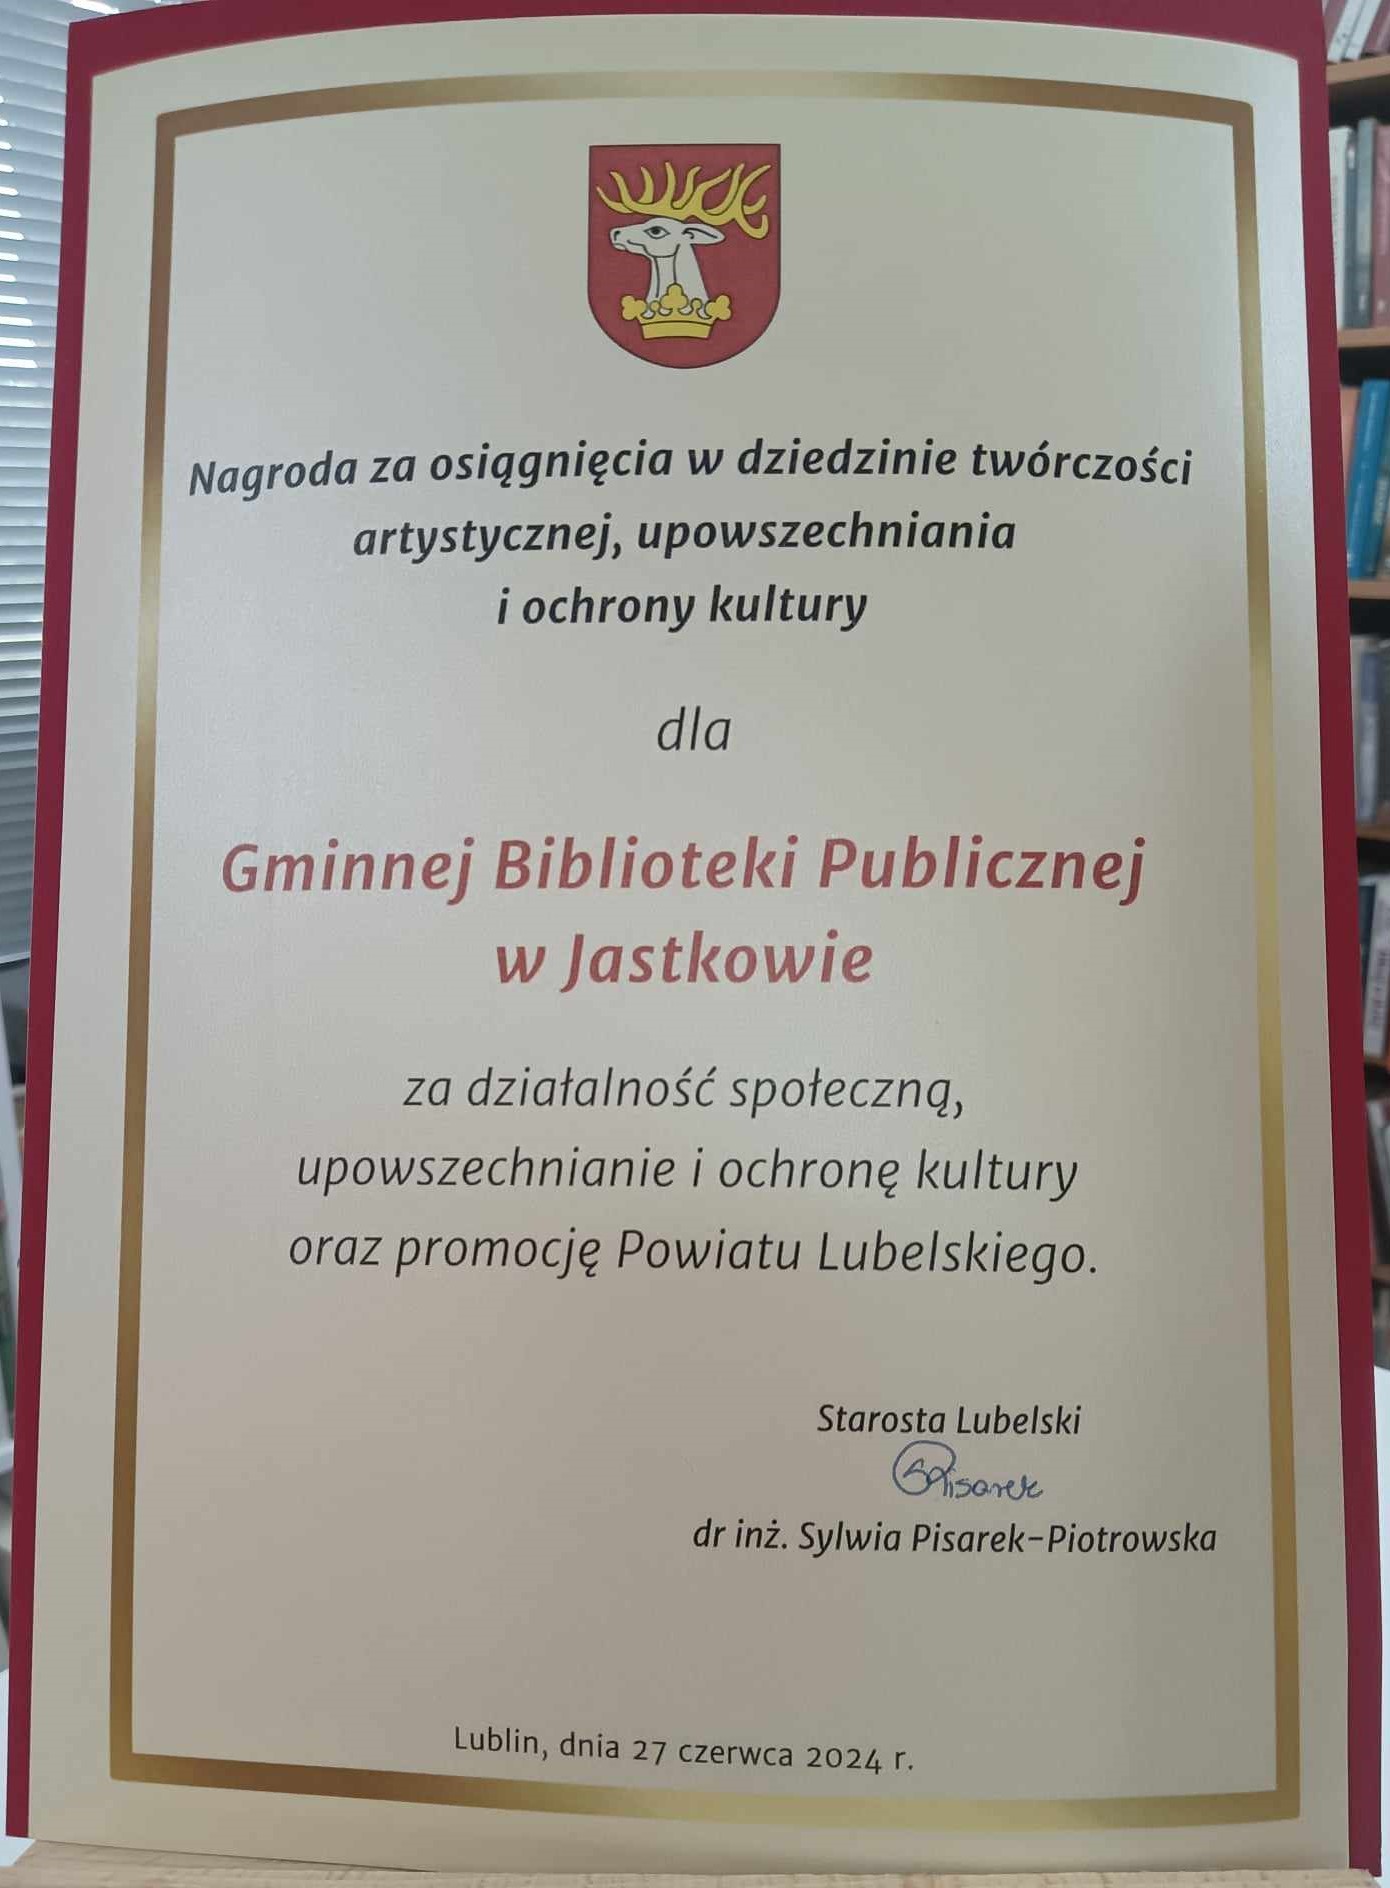 Gminna Biblioteka Publiczna w Jastkowie otrzymała nagrodę